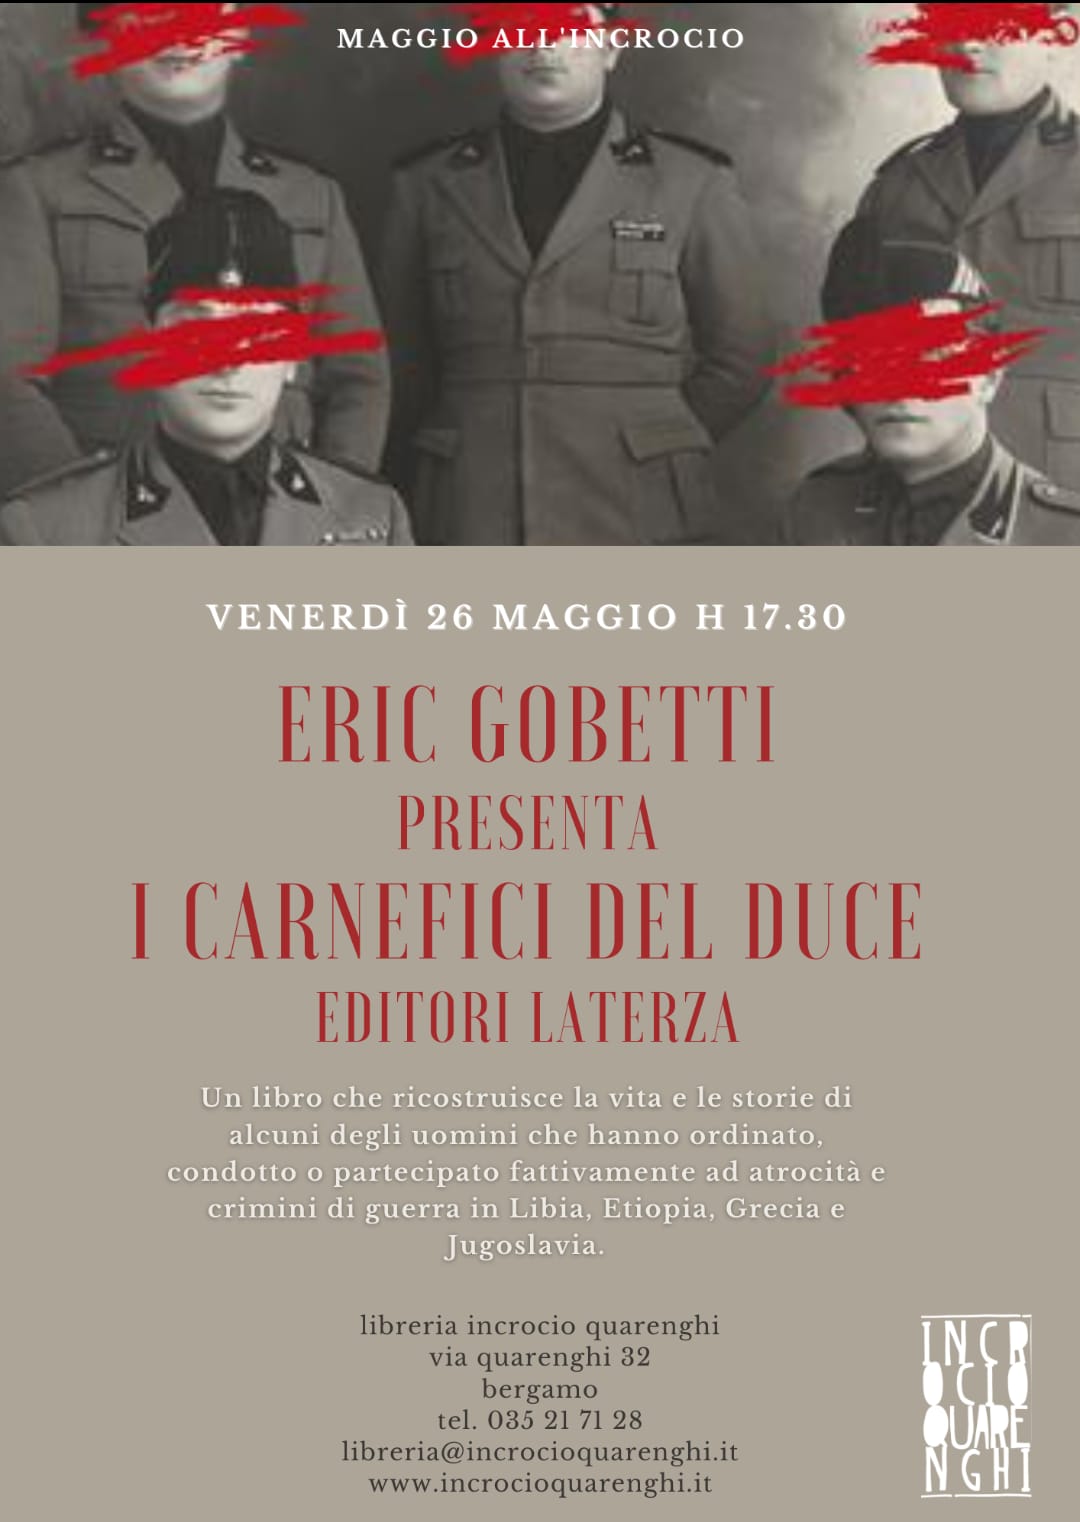 Eric Gobetti presenta I CARNEFICI DEL DUCE